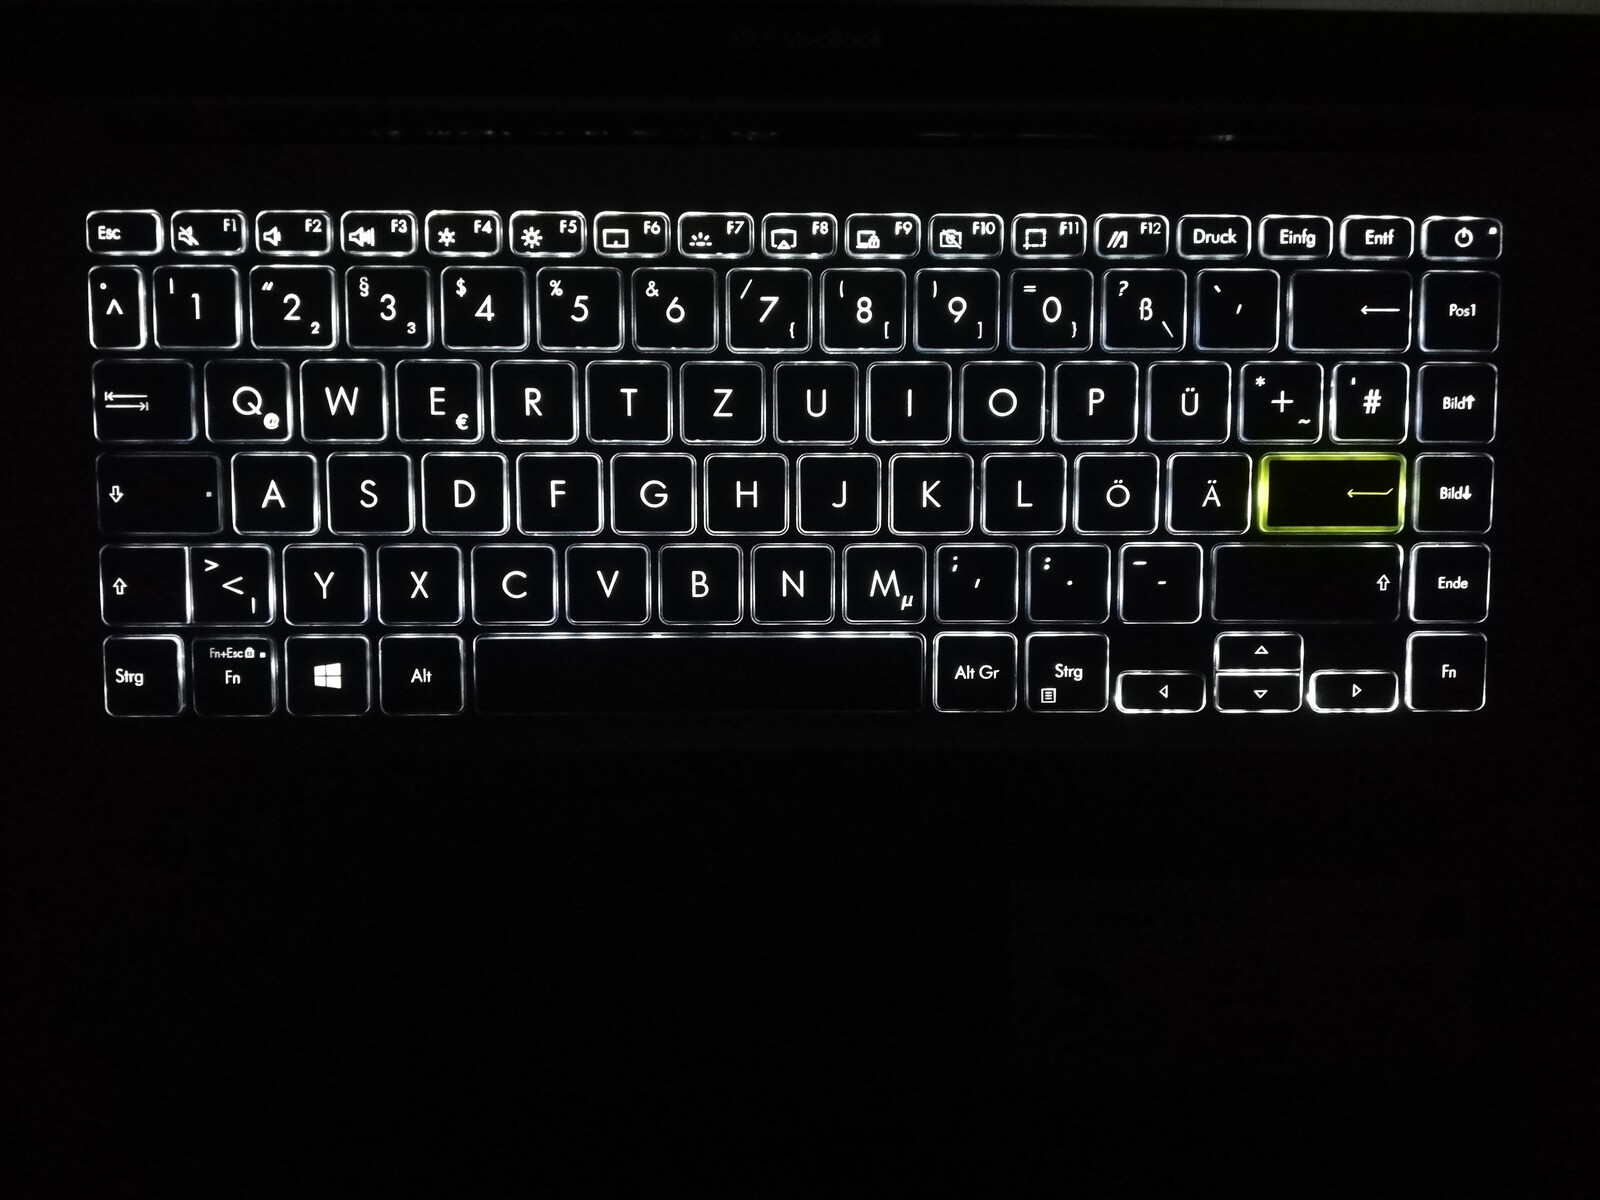 asus laptop keys not lighting up